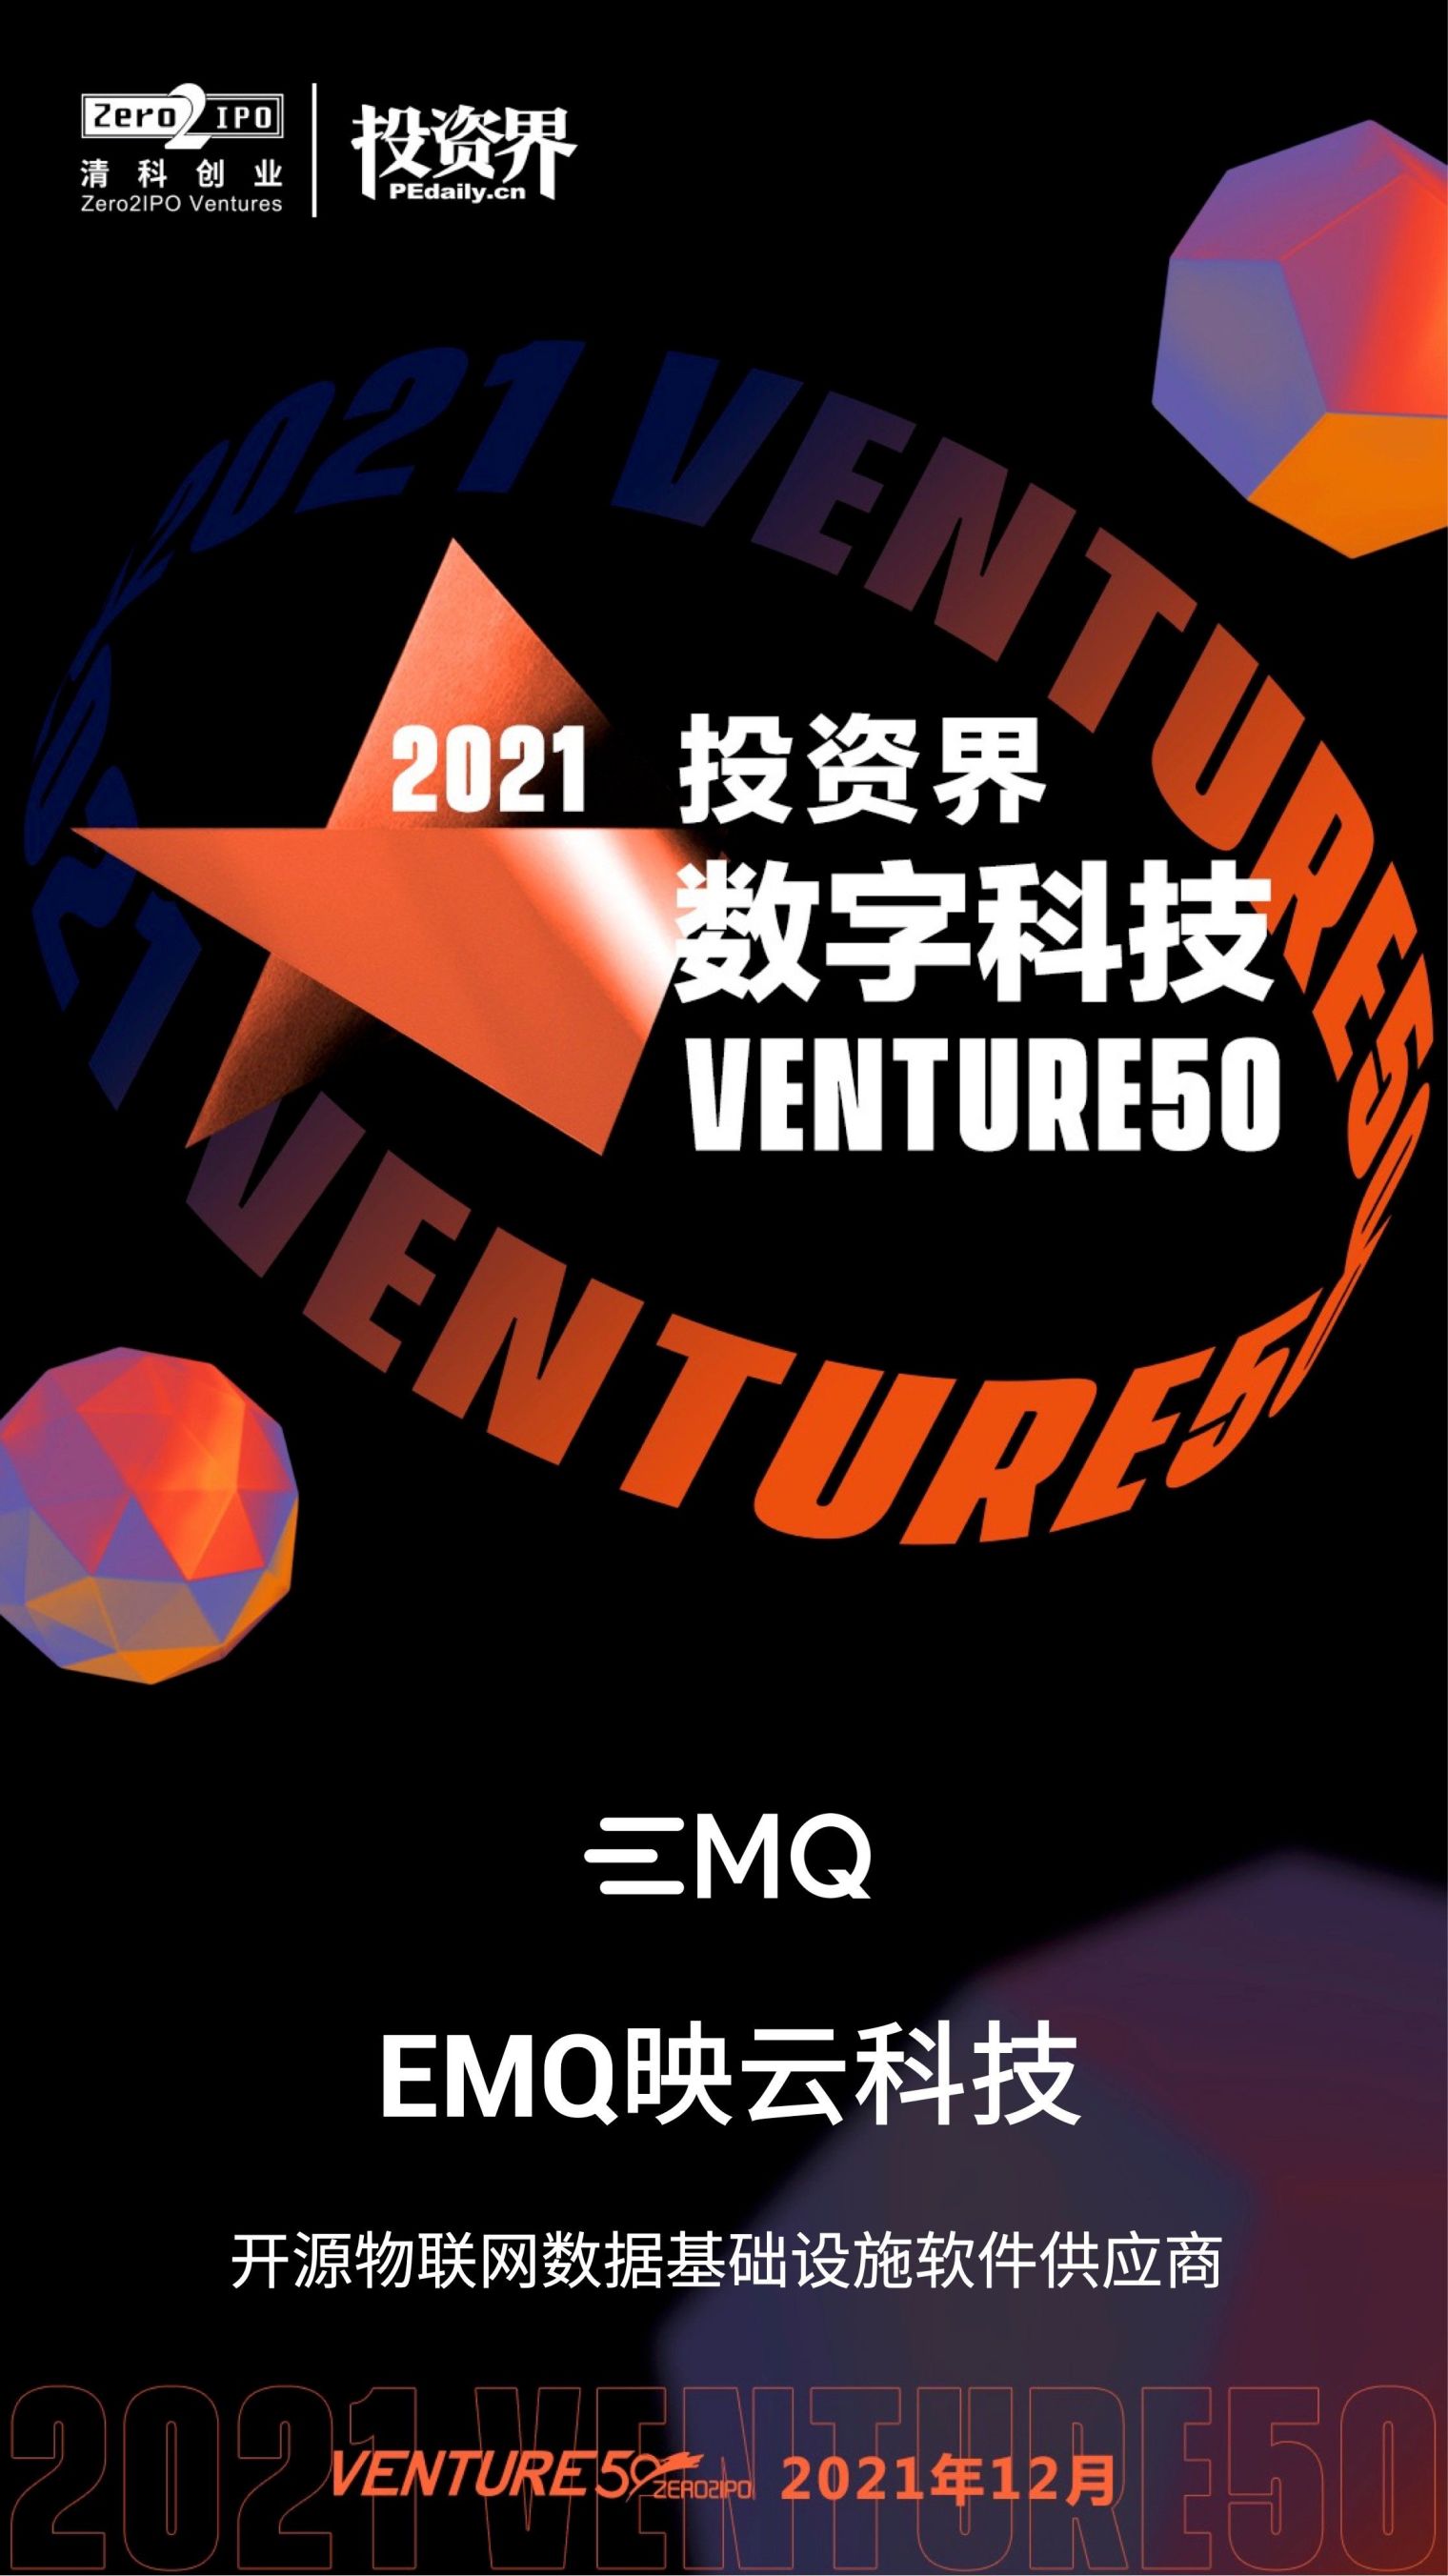 EMQ 2021 Venture50